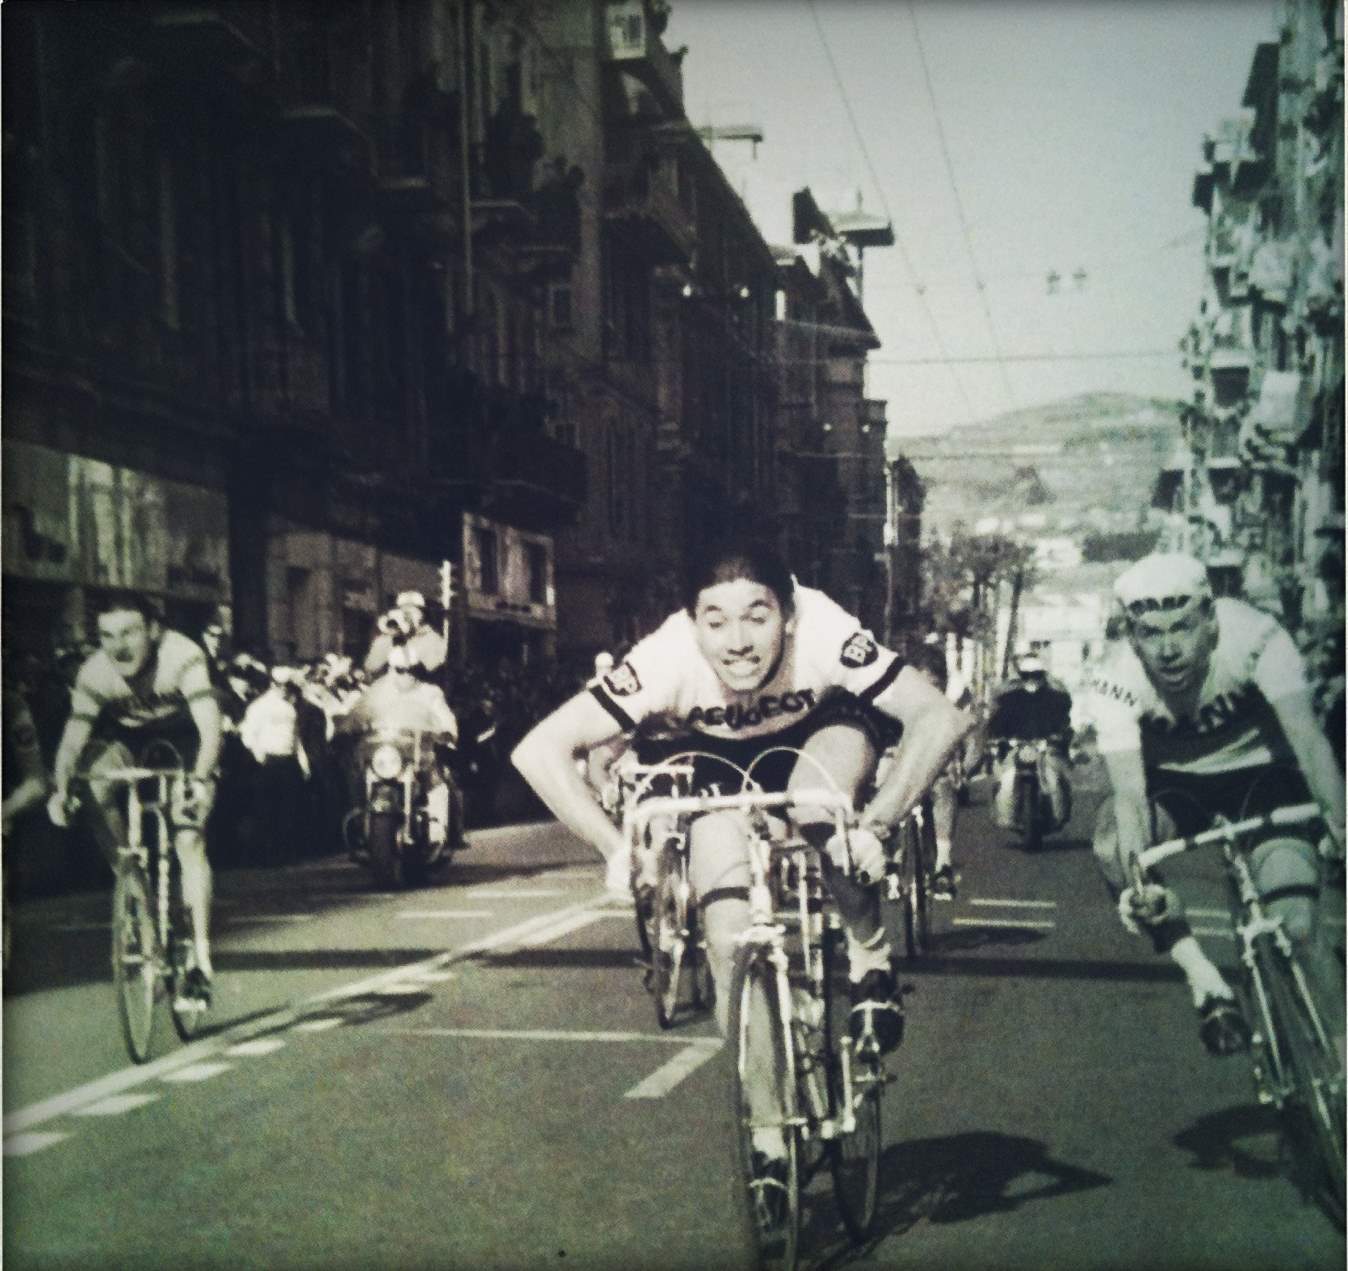 Eddy Merckx wins Milan-San Remo 1966